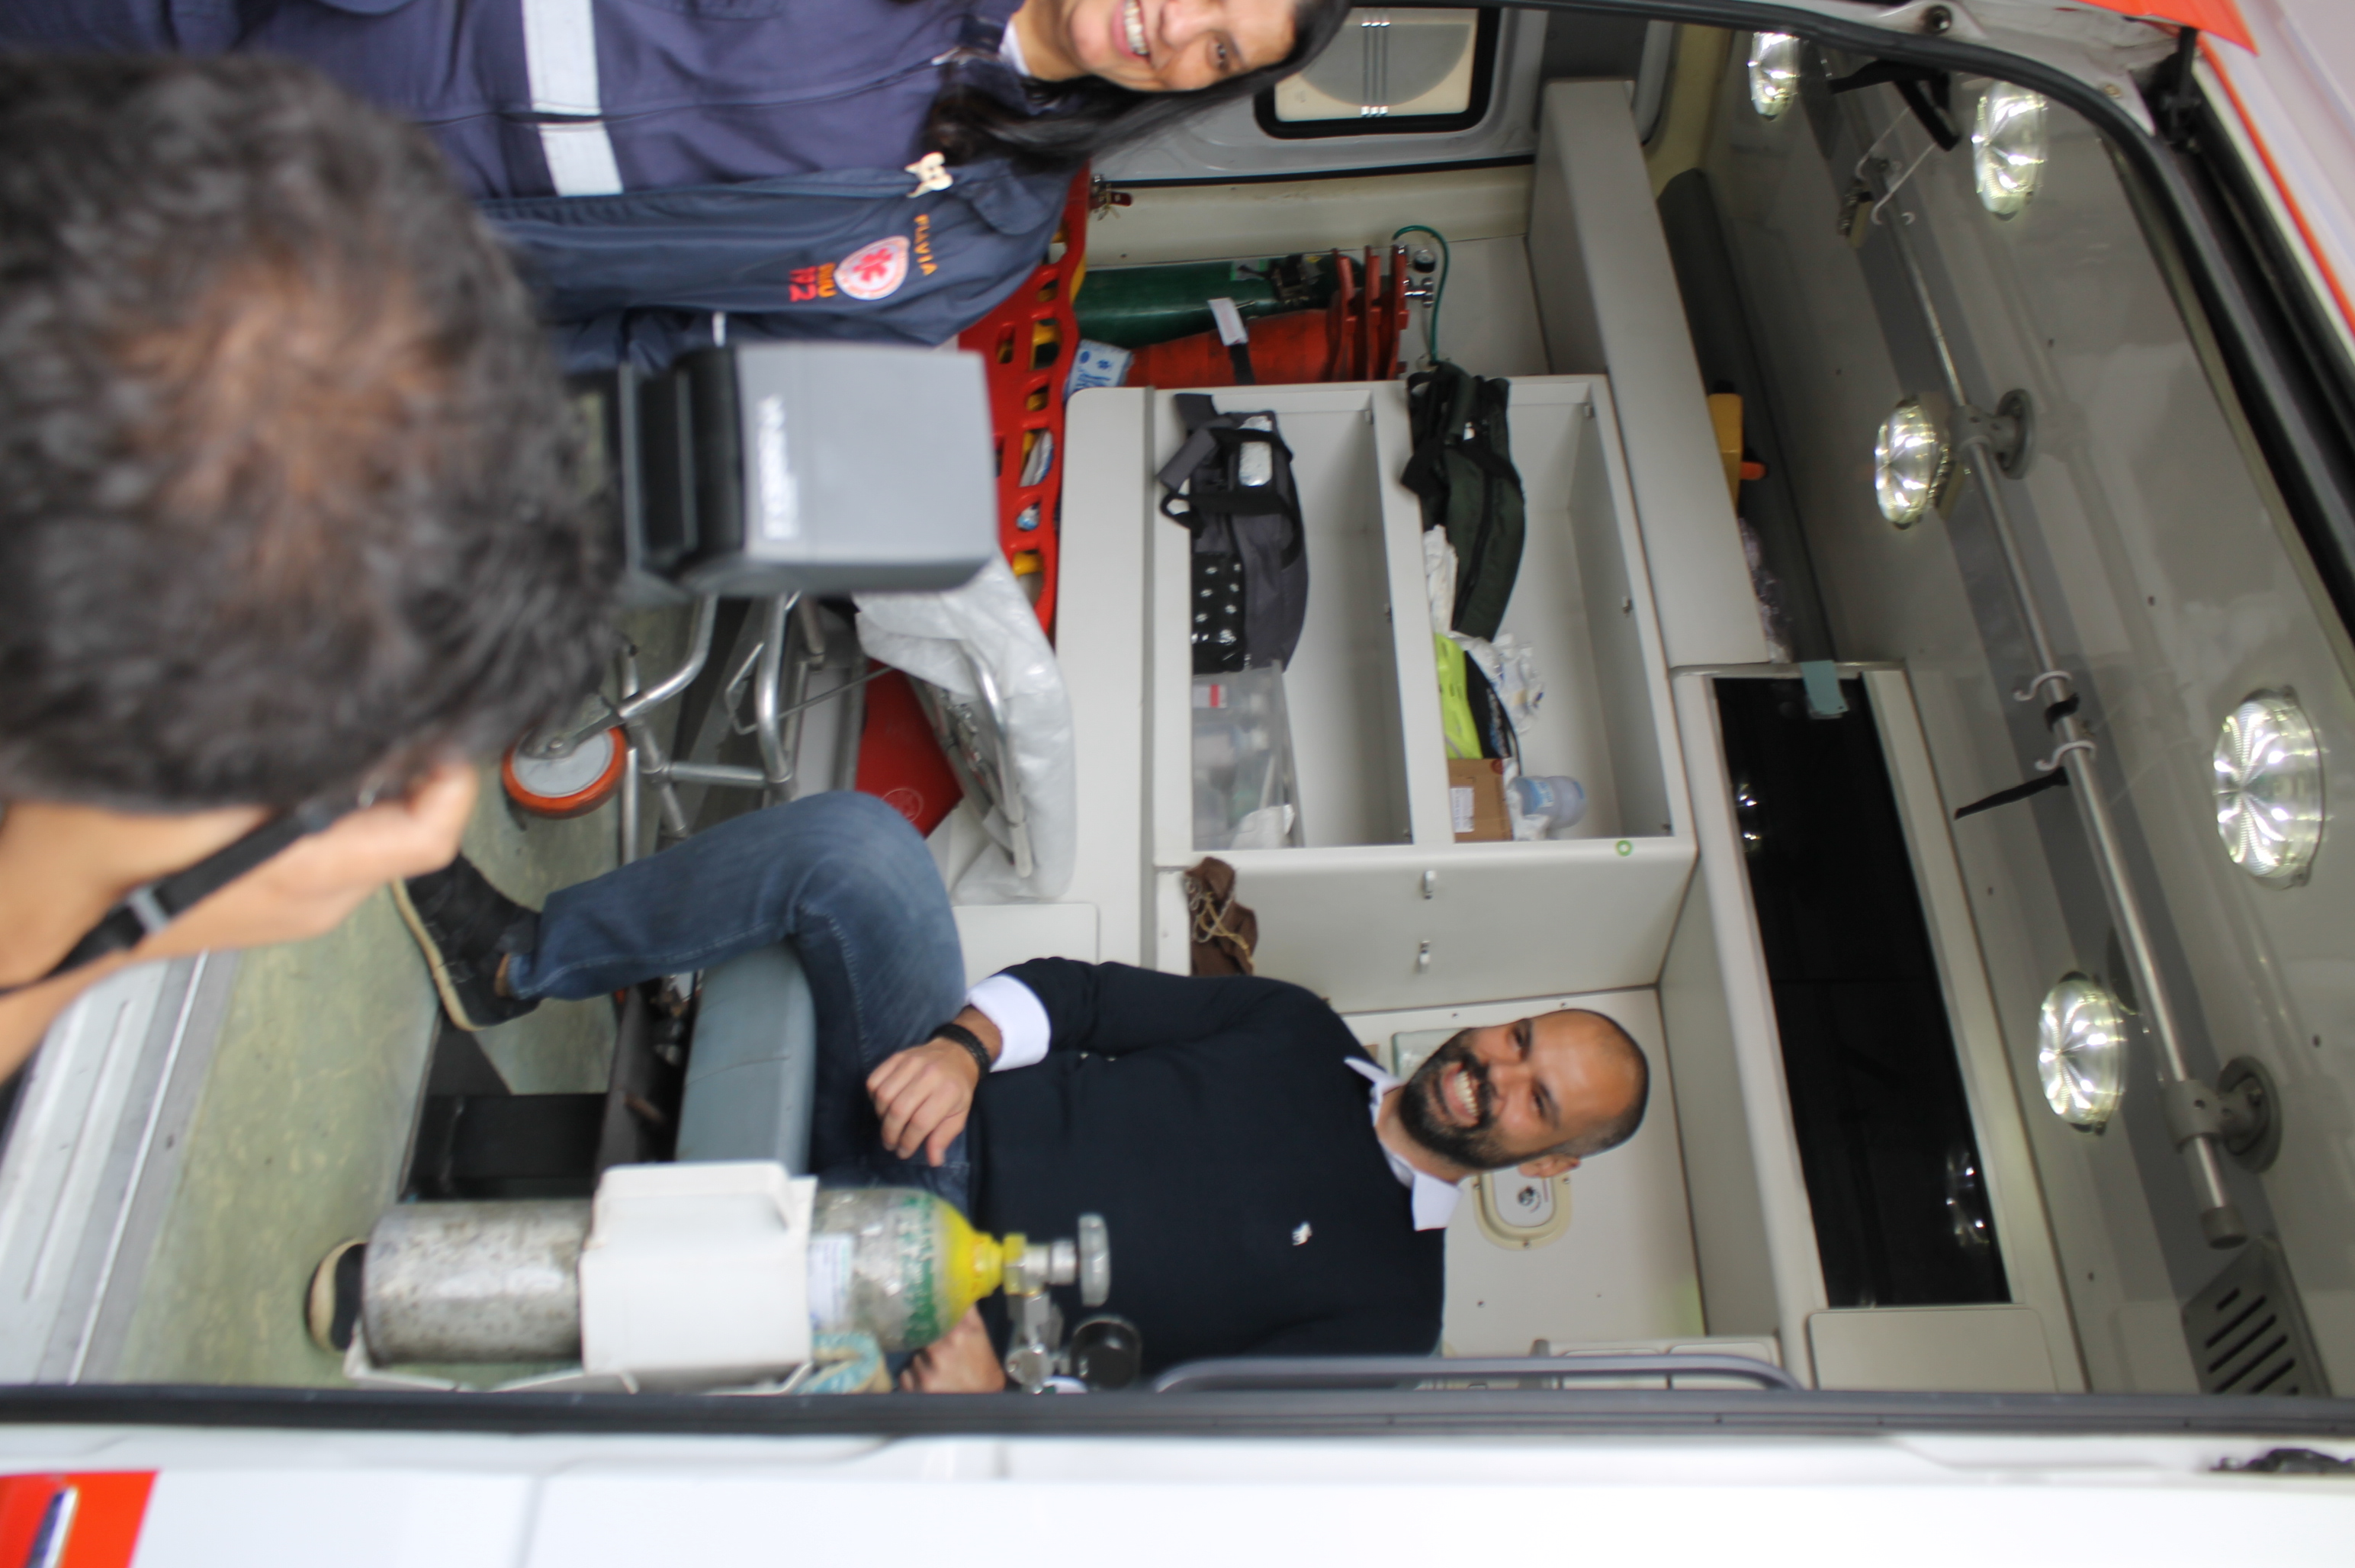 #PraCegoVer - Prefeito Bruno Covas verifica o interior da ambulância do SAMU. Há um tanque de gases medicinais, estantes com aparelhos médicos e uma maca vermelha.